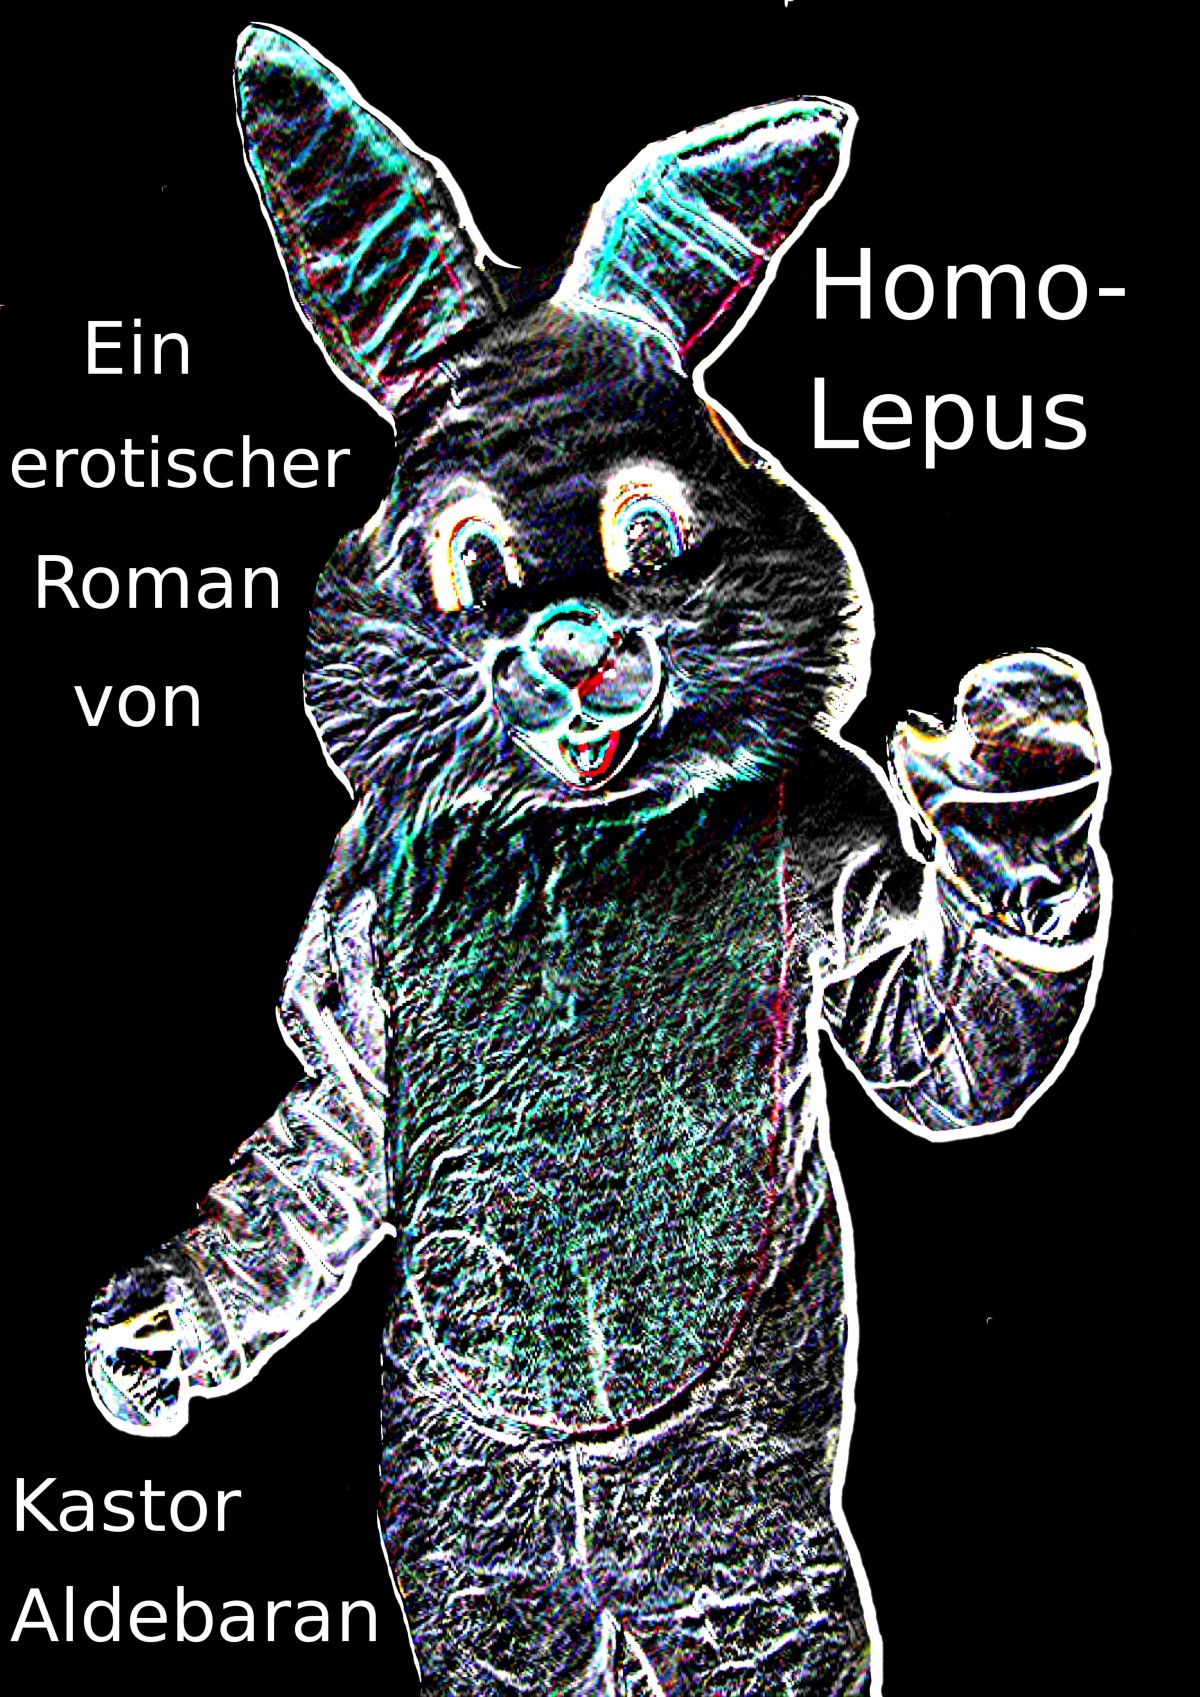 Homolepus